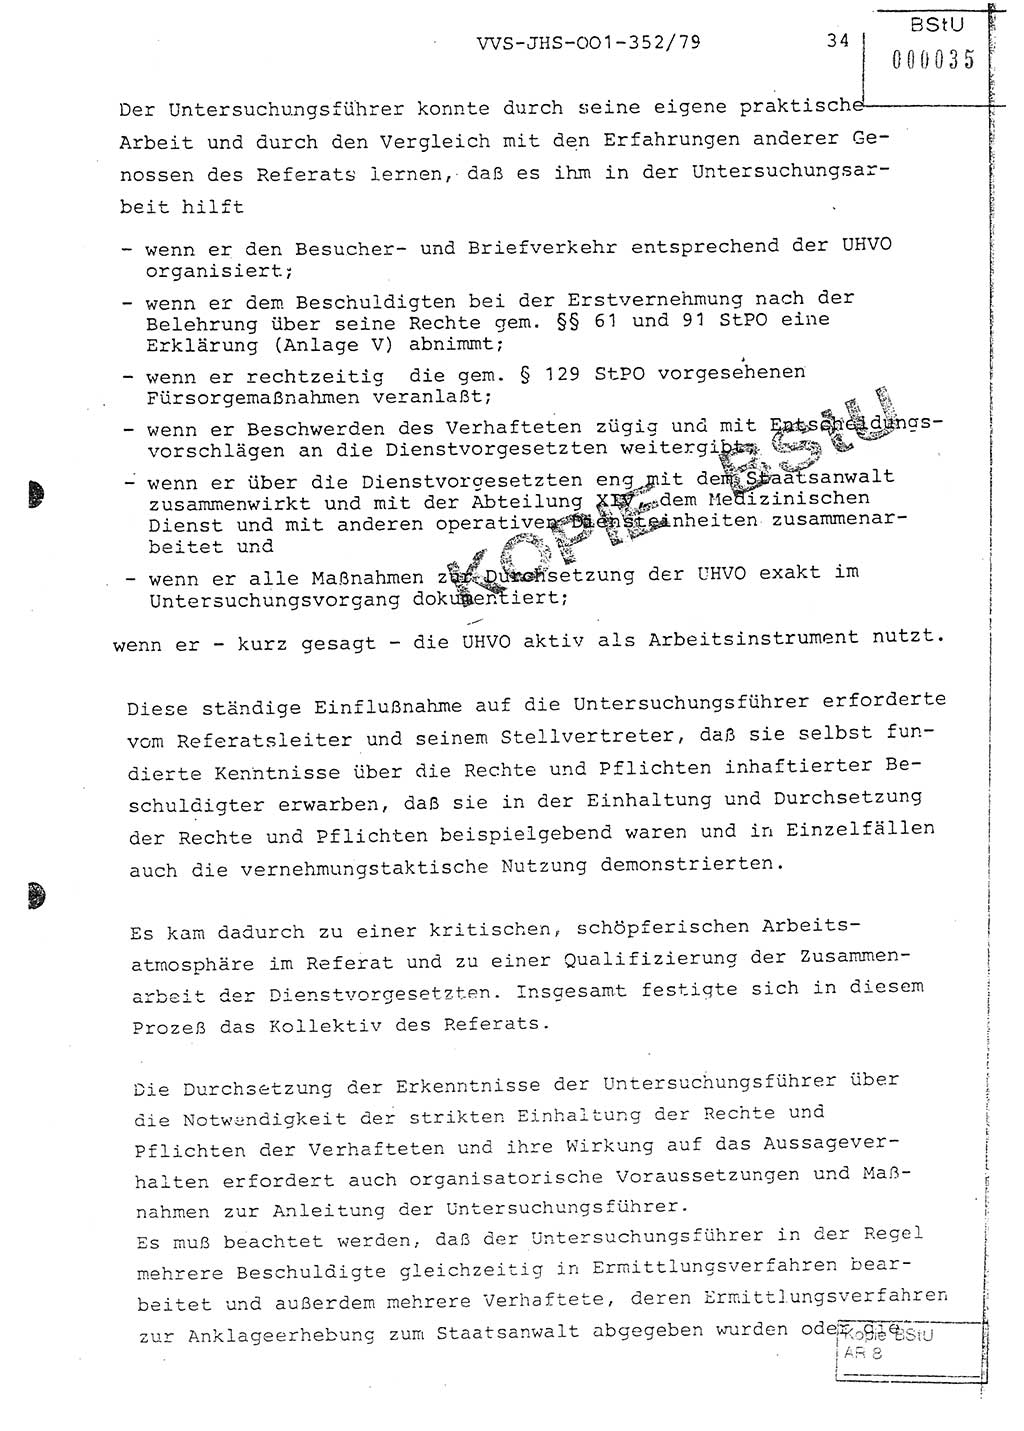 Diplomarbeit Hauptmann Peter Wittum (BV Bln. Abt. HA Ⅸ), Ministerium für Staatssicherheit (MfS) [Deutsche Demokratische Republik (DDR)], Juristische Hochschule (JHS), Vertrauliche Verschlußsache (VVS) o001-352/79, Potsdam 1979, Seite 34 (Dipl.-Arb. MfS DDR JHS VVS o001-352/79 1979, S. 34)